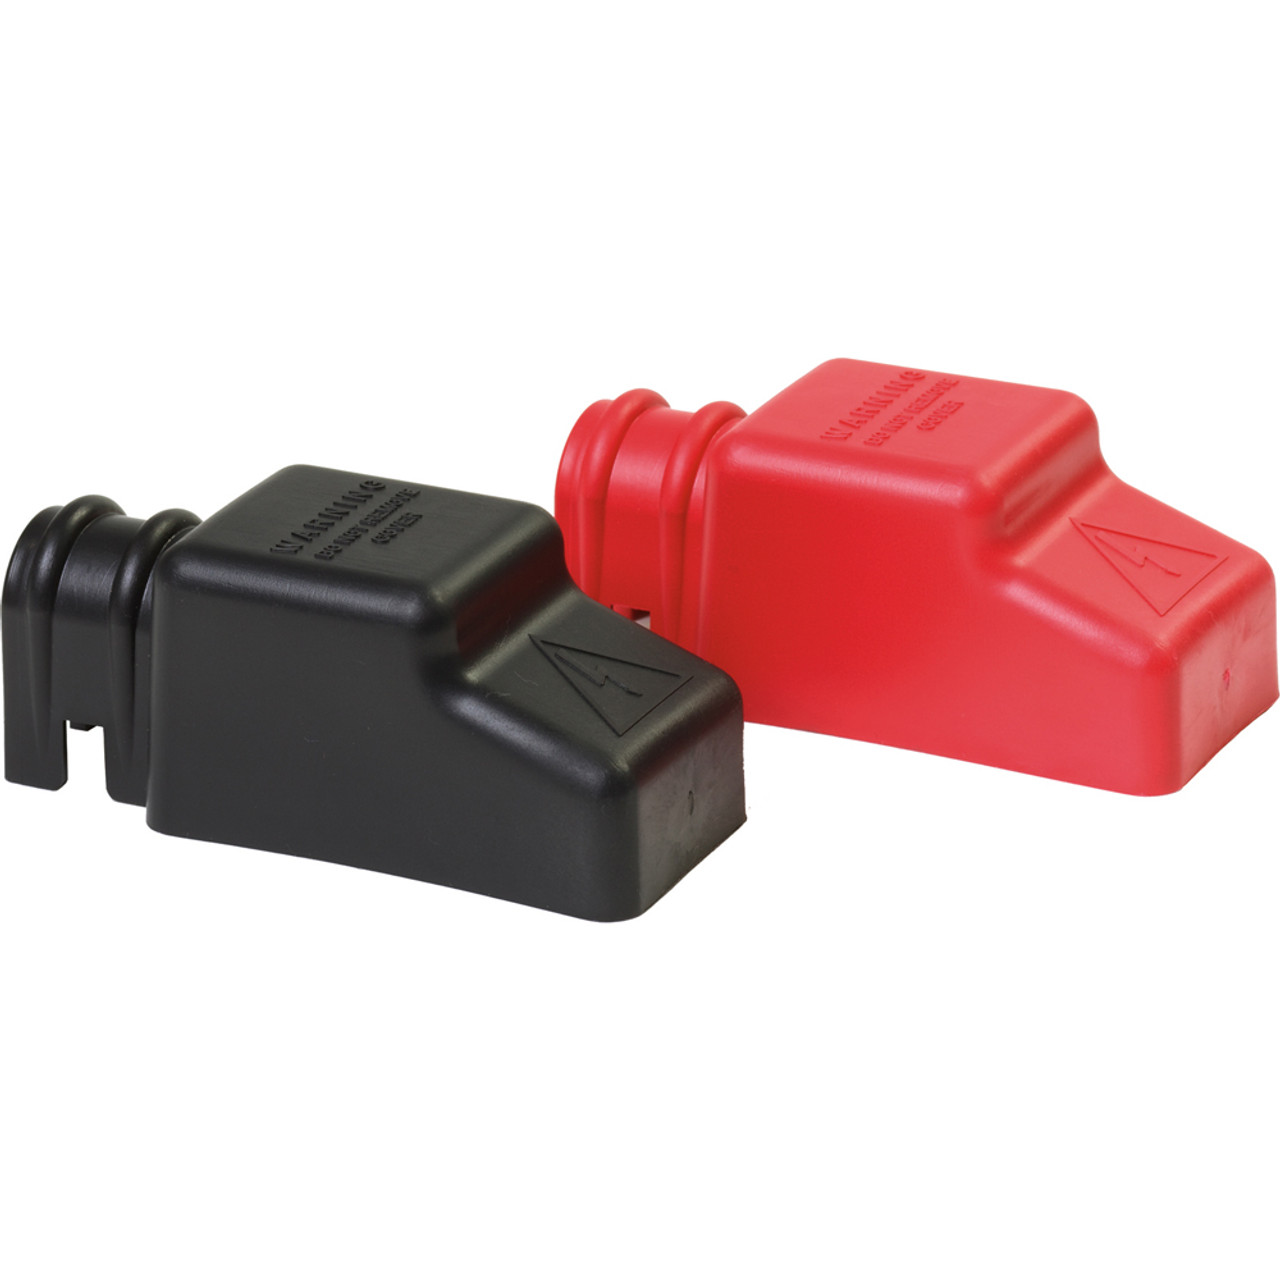 Blue Sea 4018 Square CableCap Insulators Pair Red\/Black [4018]